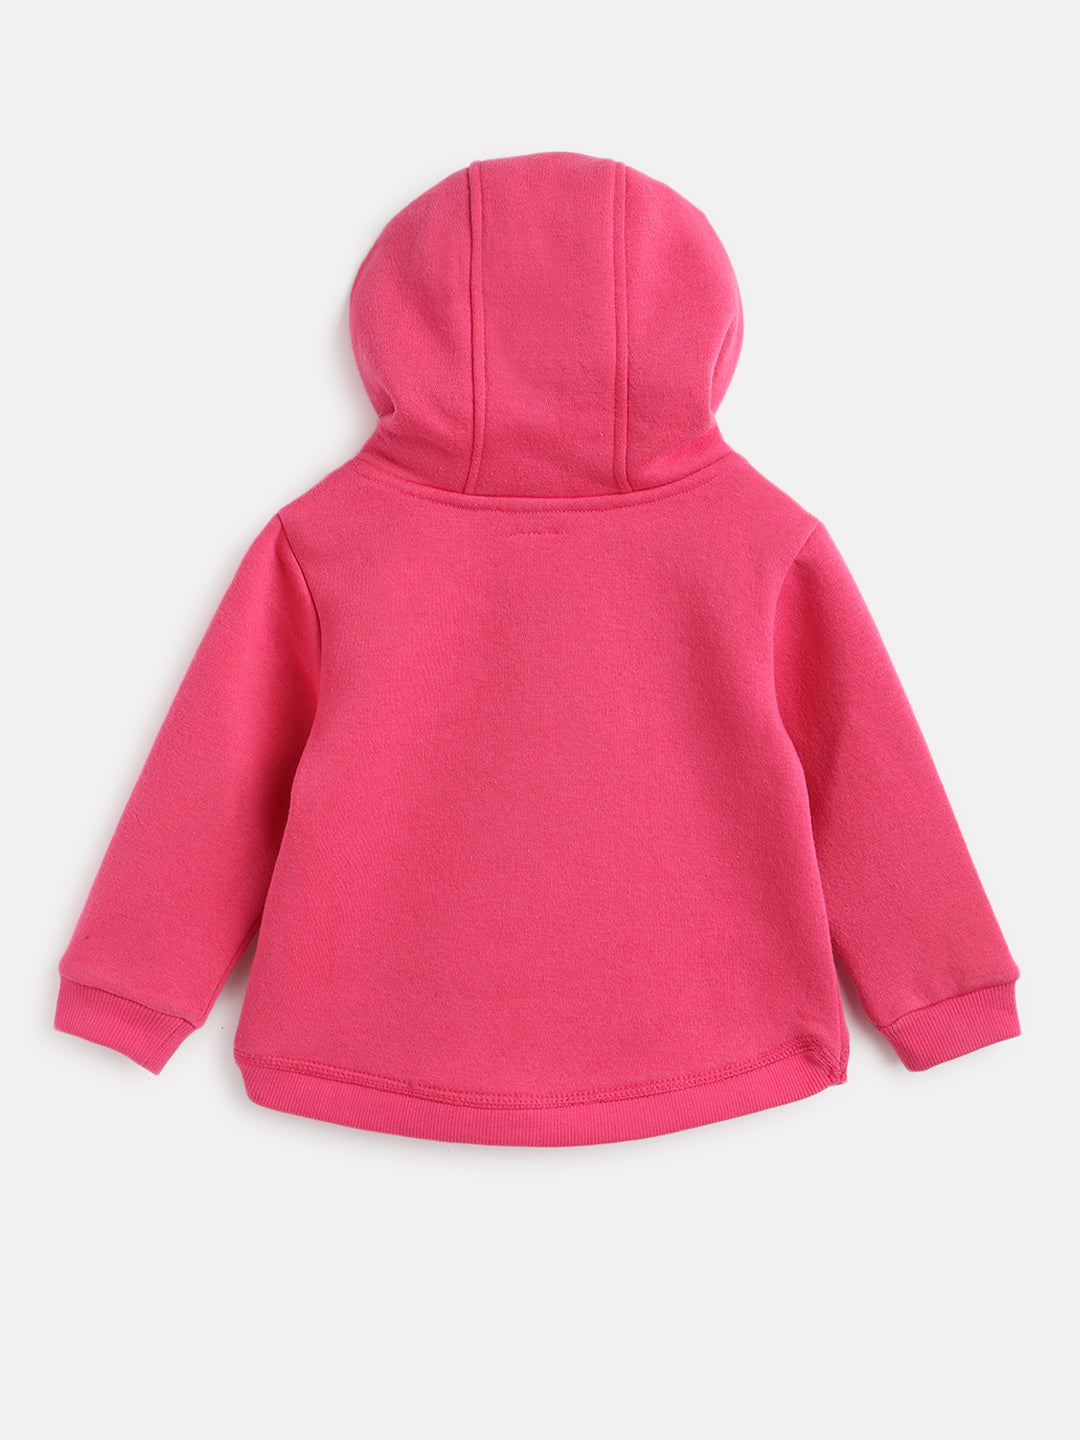 Nautinati Girls Pink Printed Hooded Sweatshirt